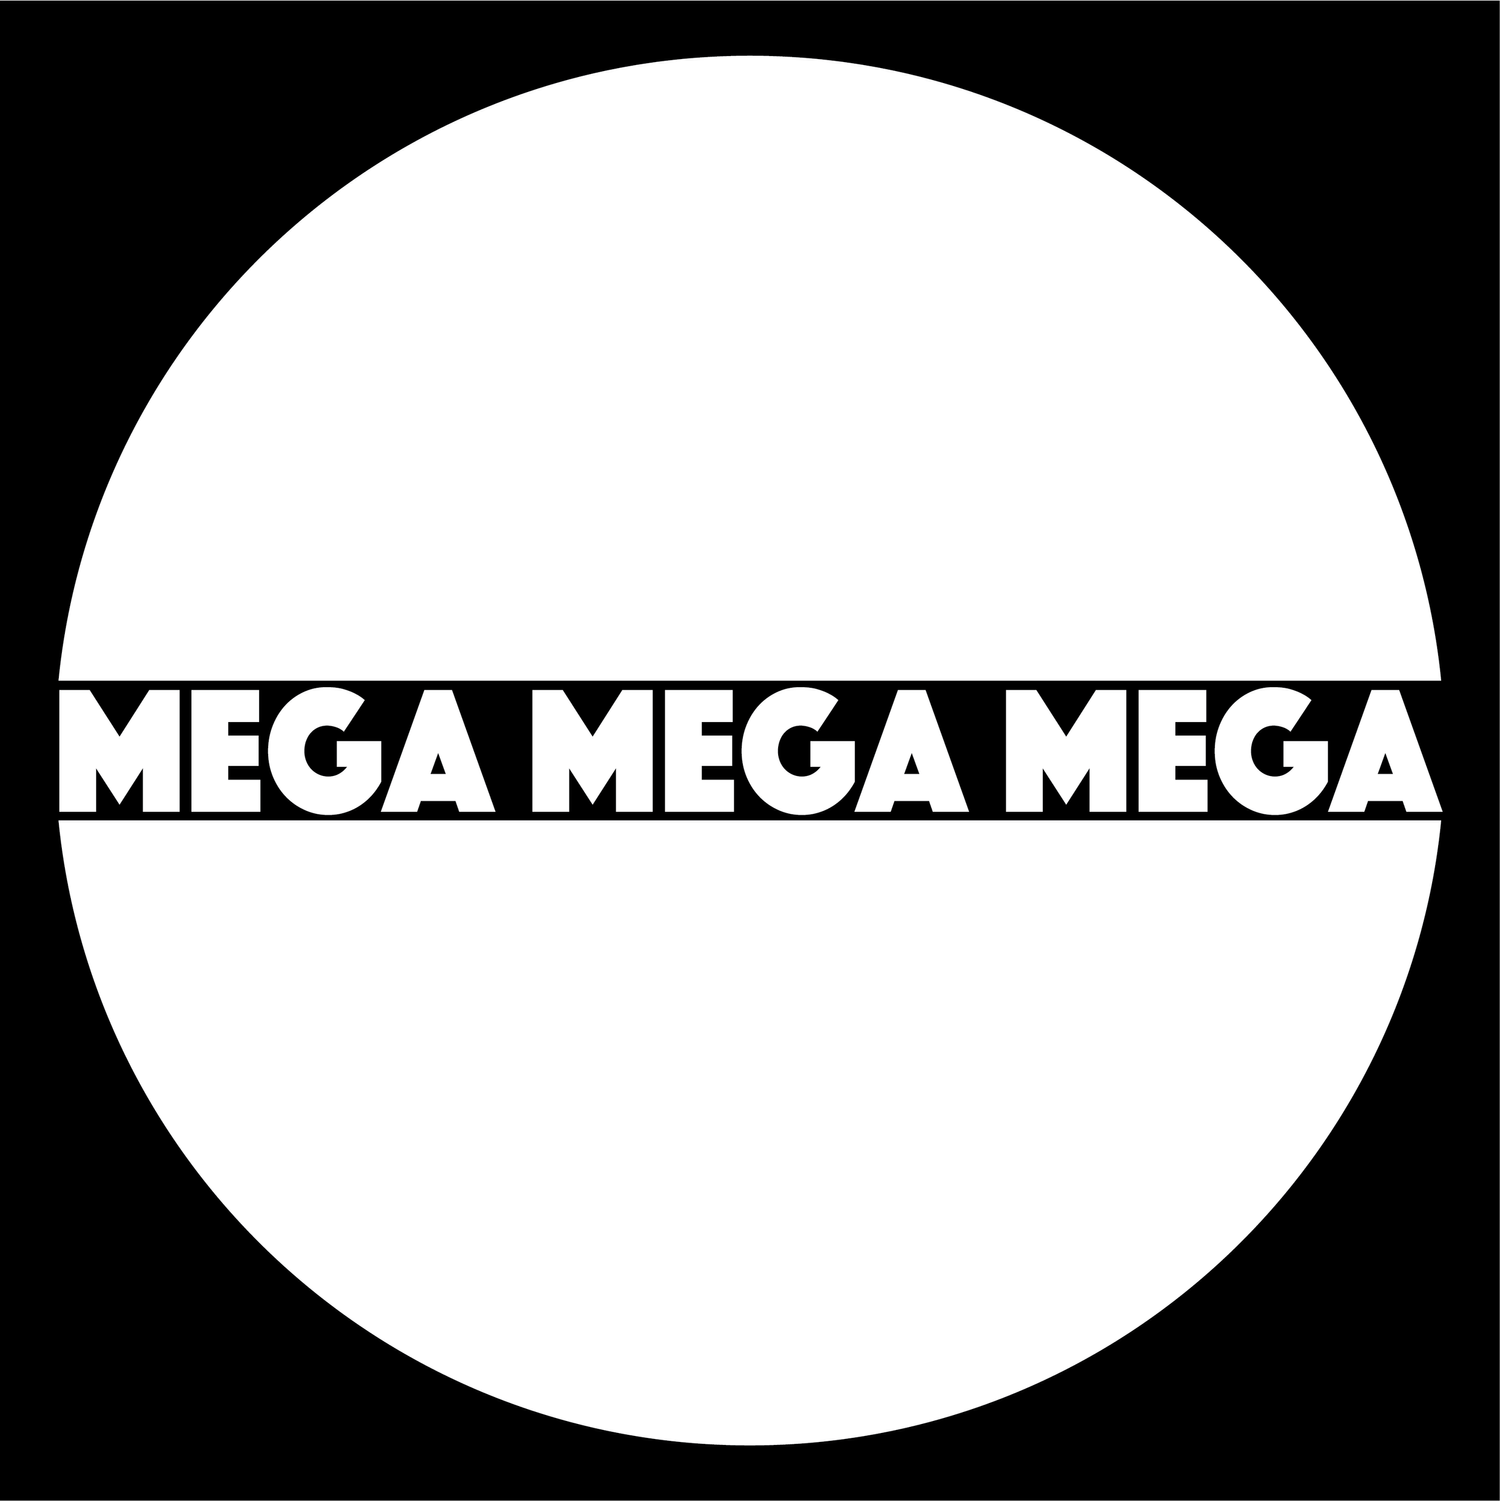 Mega Mega Mega